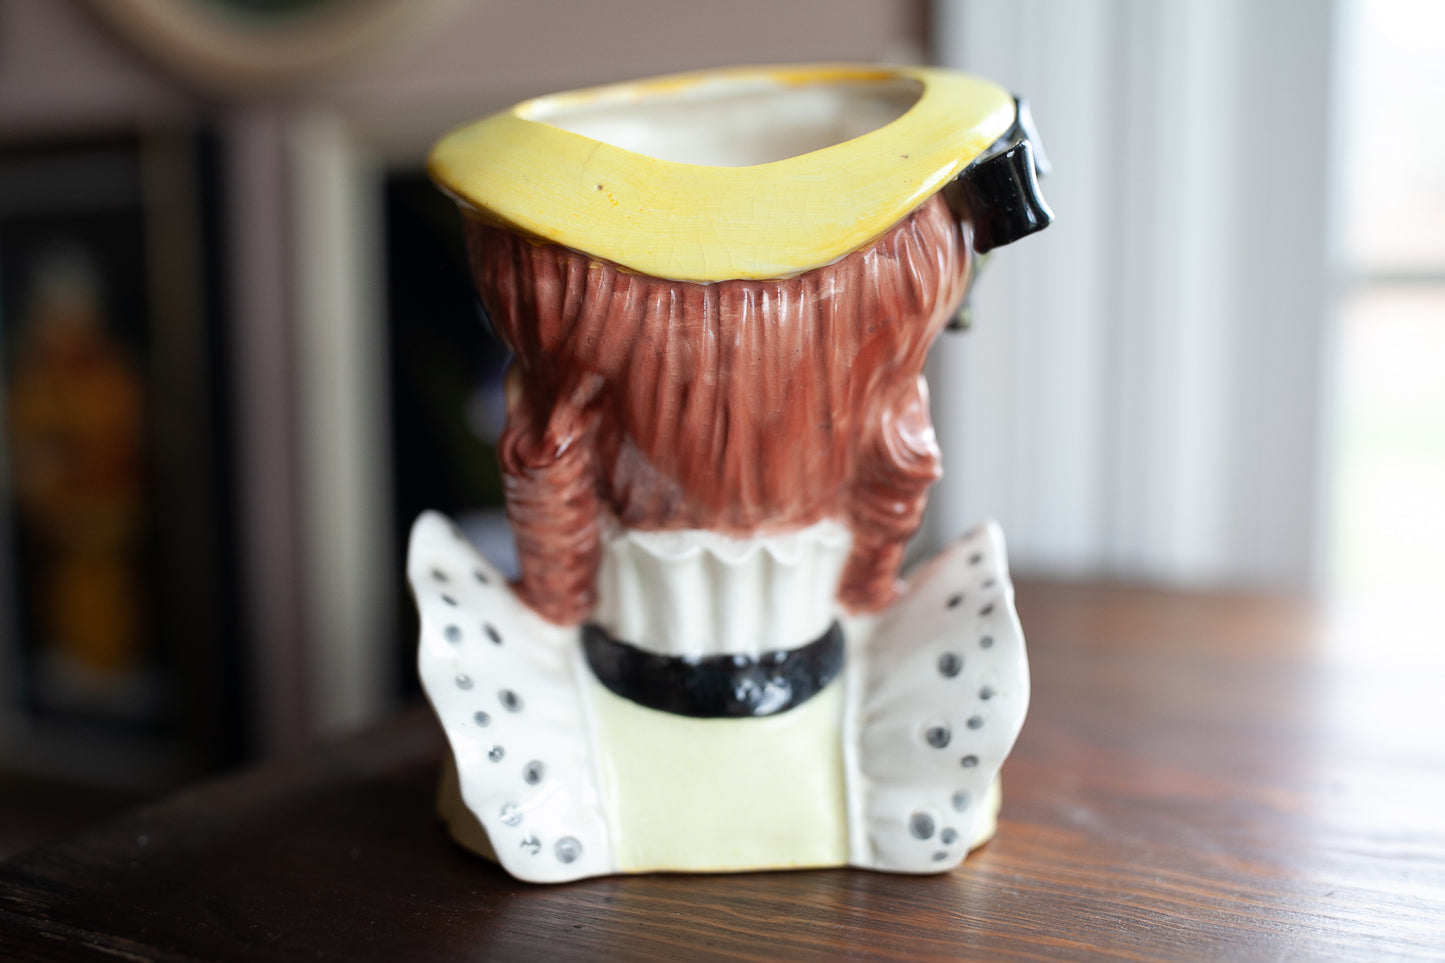 Vintage Lady Head Vase